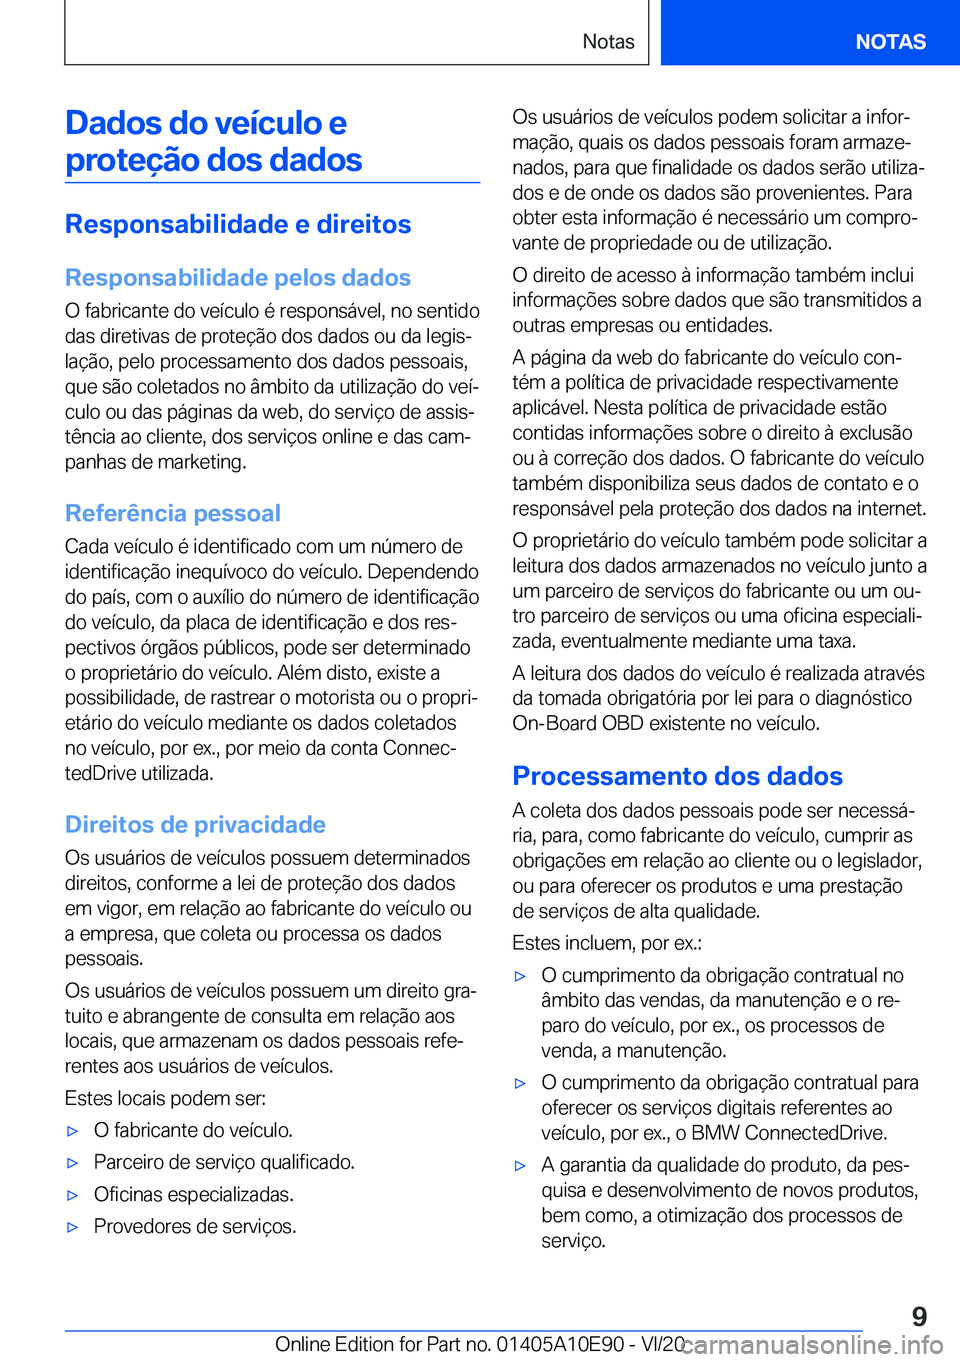 BMW X3 2021  Manual do condutor (in Portuguese) �D�a�d�o�s��d�o��v�e�